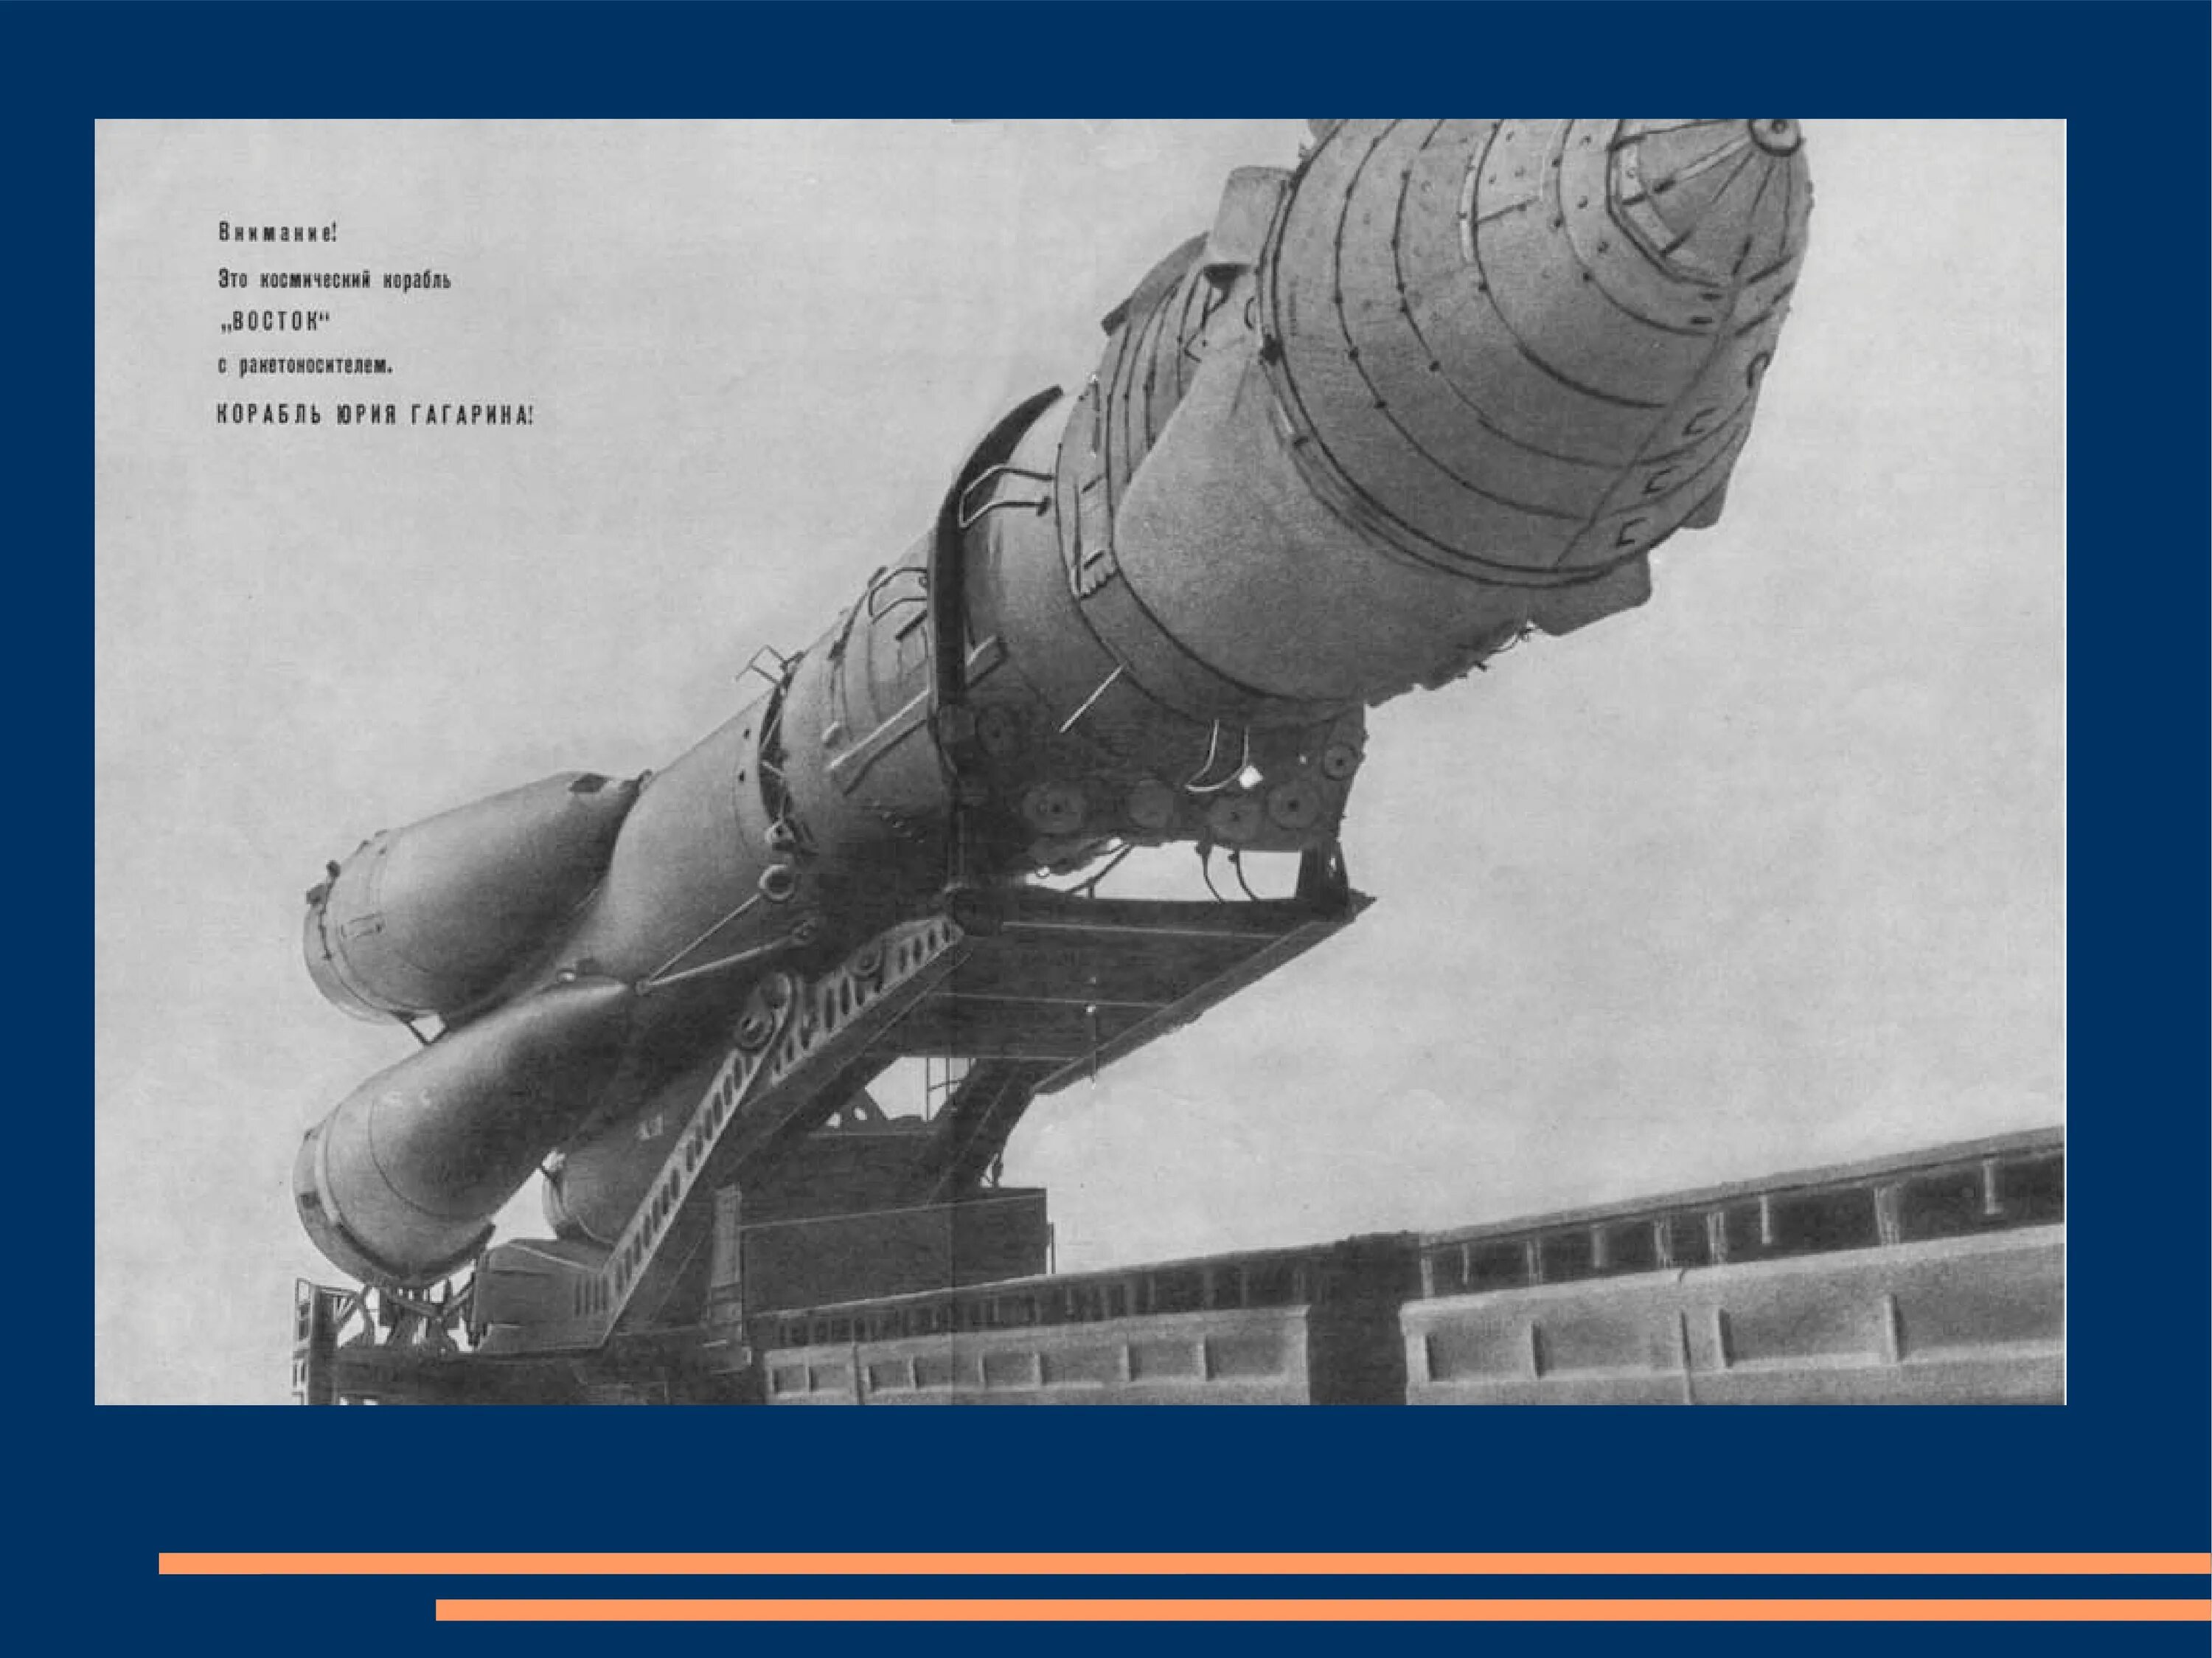 Космический корабль Восток Юрия Гагарина. Корабль Восток 1 Гагарин. Ракета Юрия Гагарина Восток-1. Космический корабль Восток Юрия Гагарина фото. Как называлась ракета на которой полетел